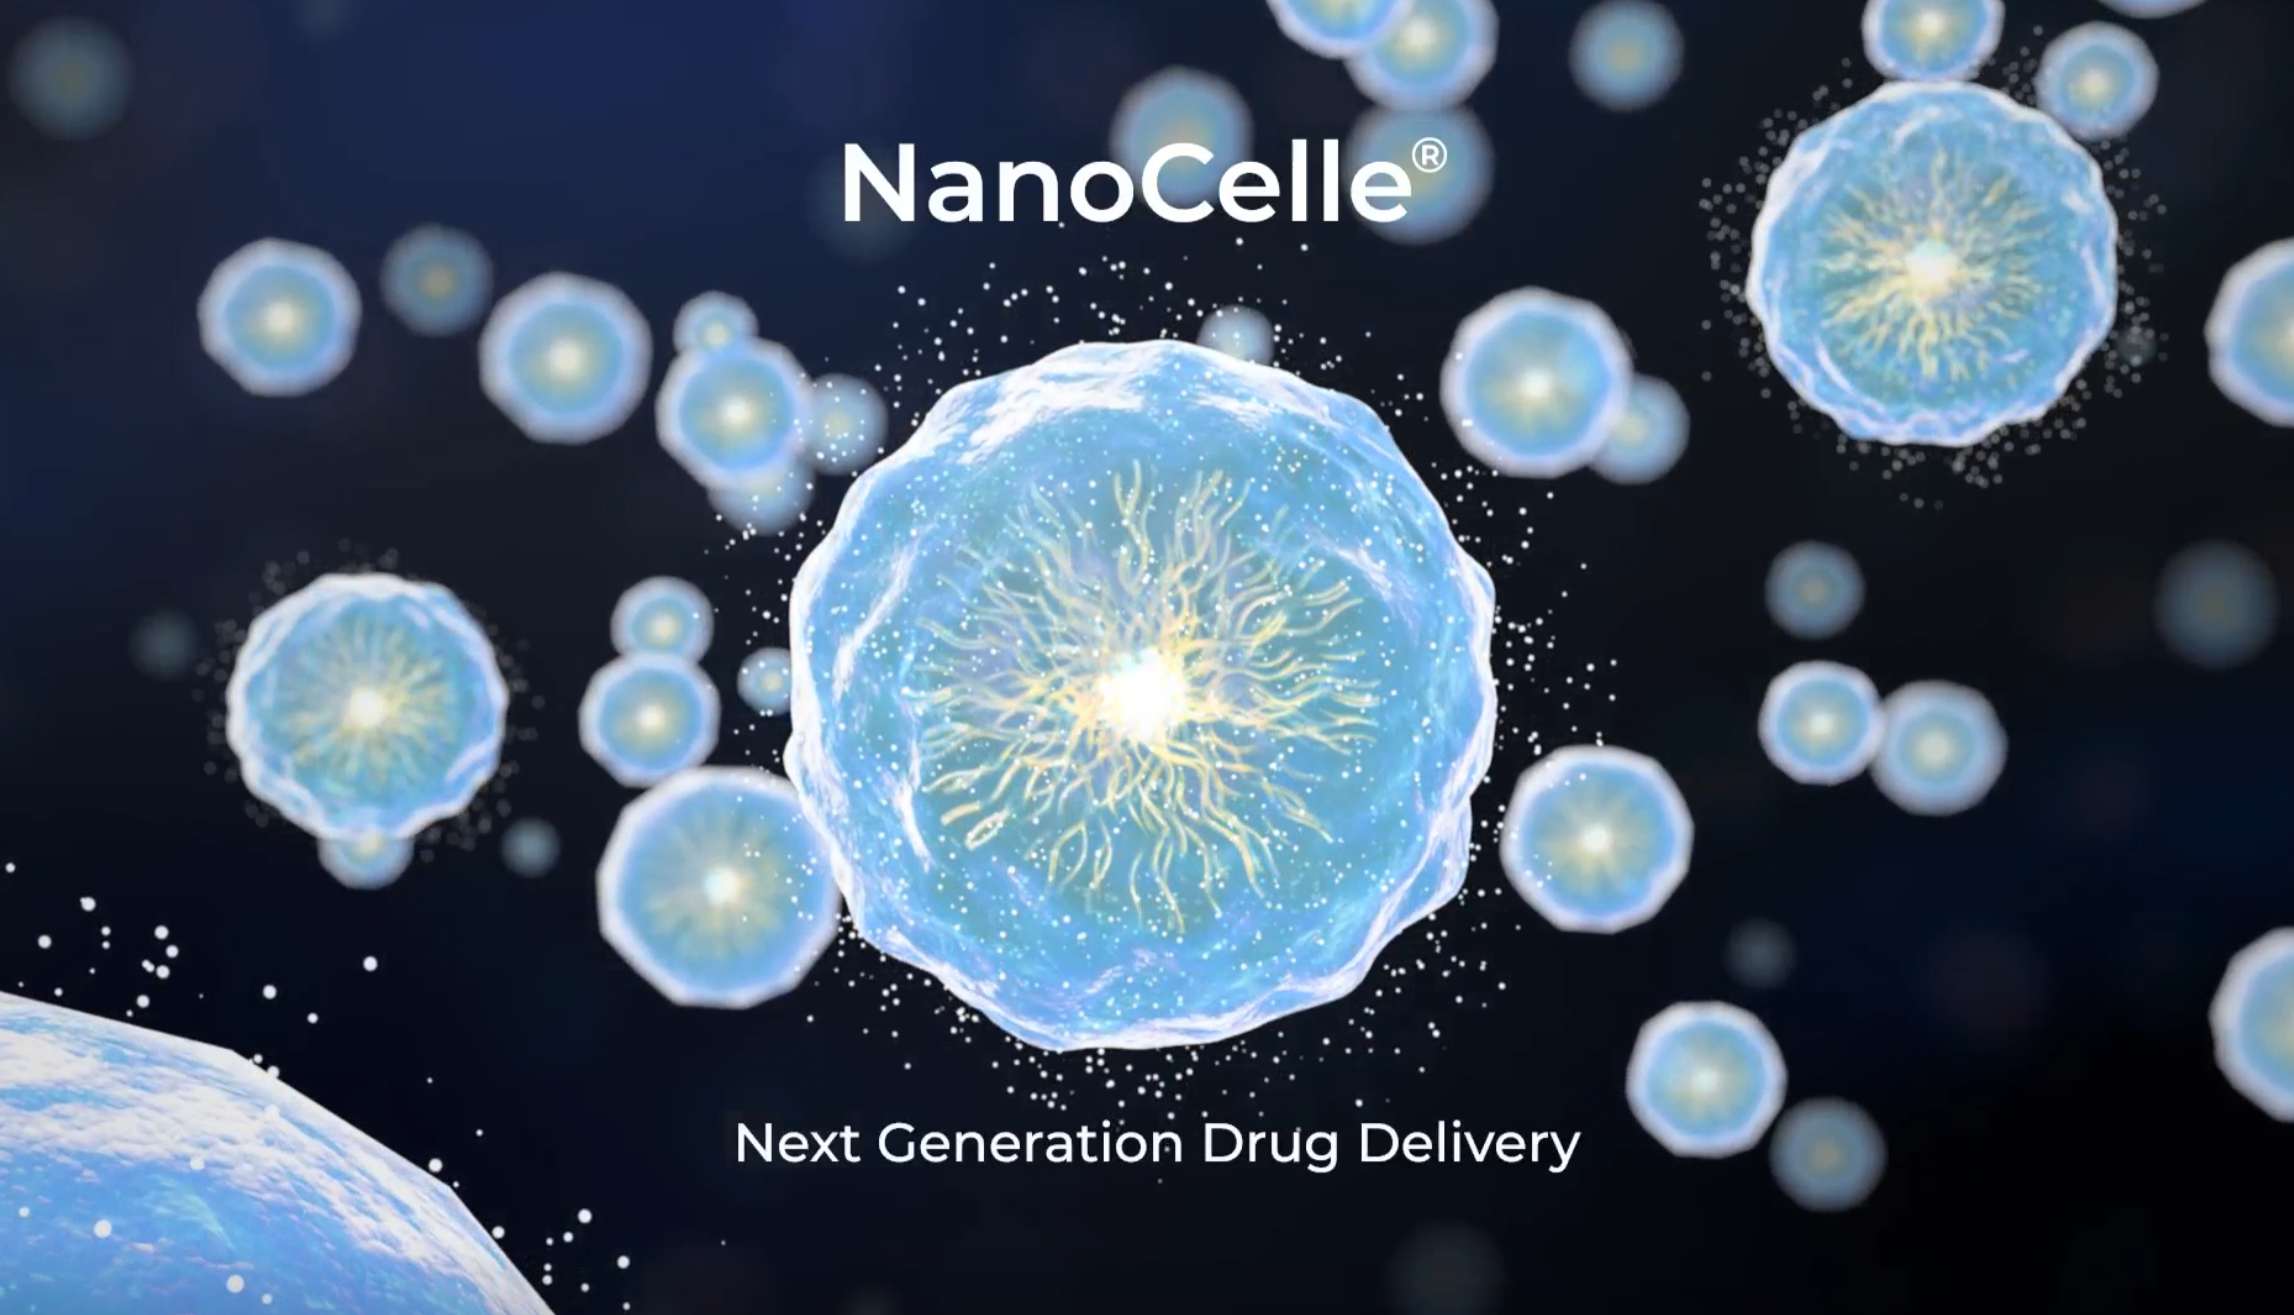 NanoCelle